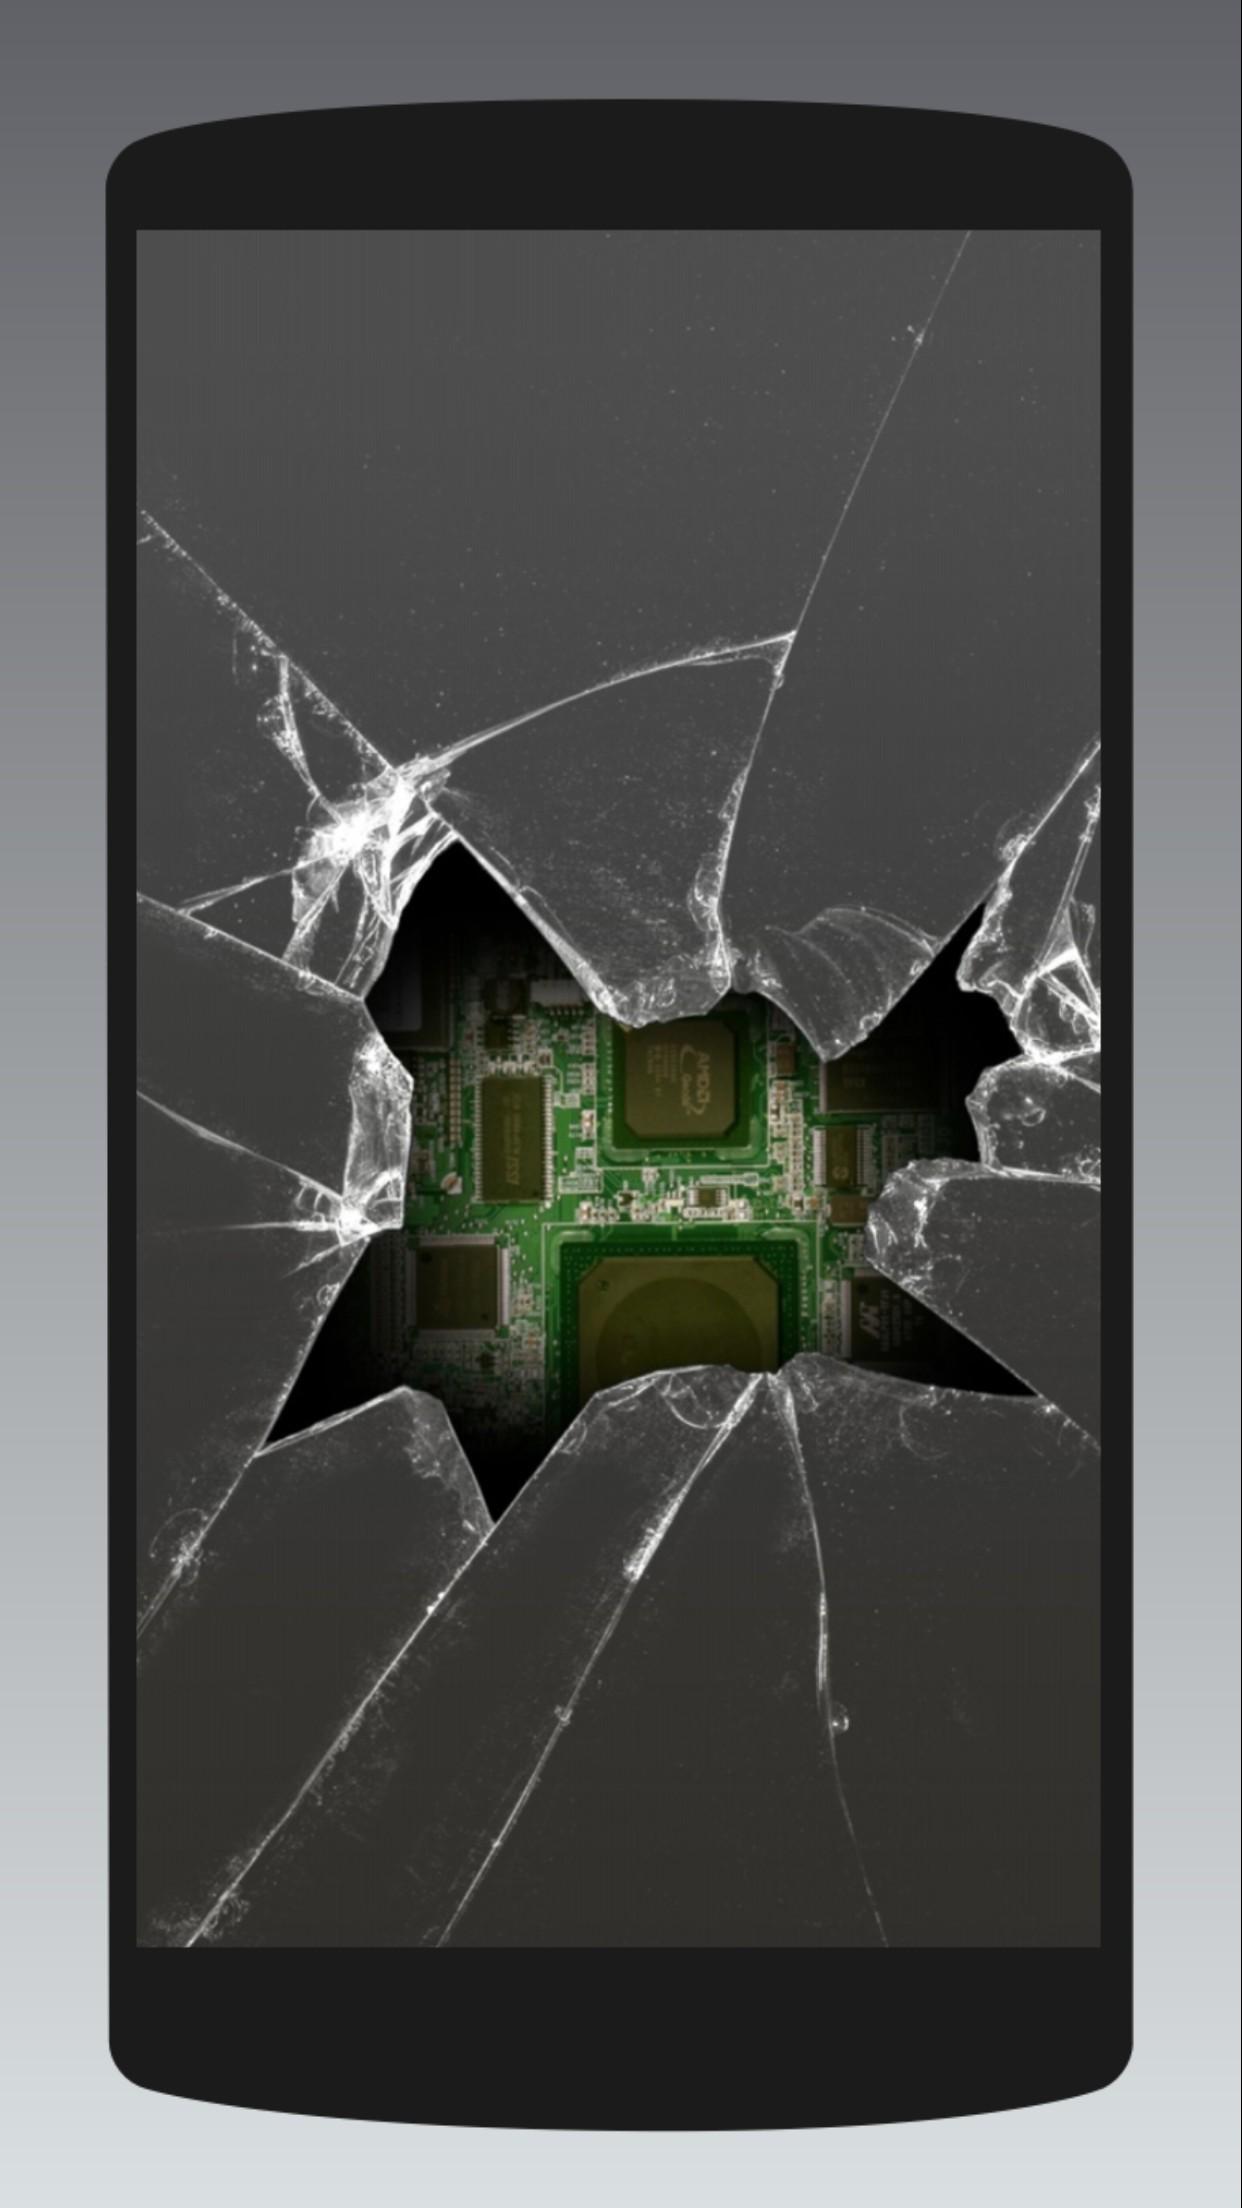 Хорошие обоев на экране телефона. Разбитое стекло. Разбитый экран. Разбитый экран телефона. Битый экран.